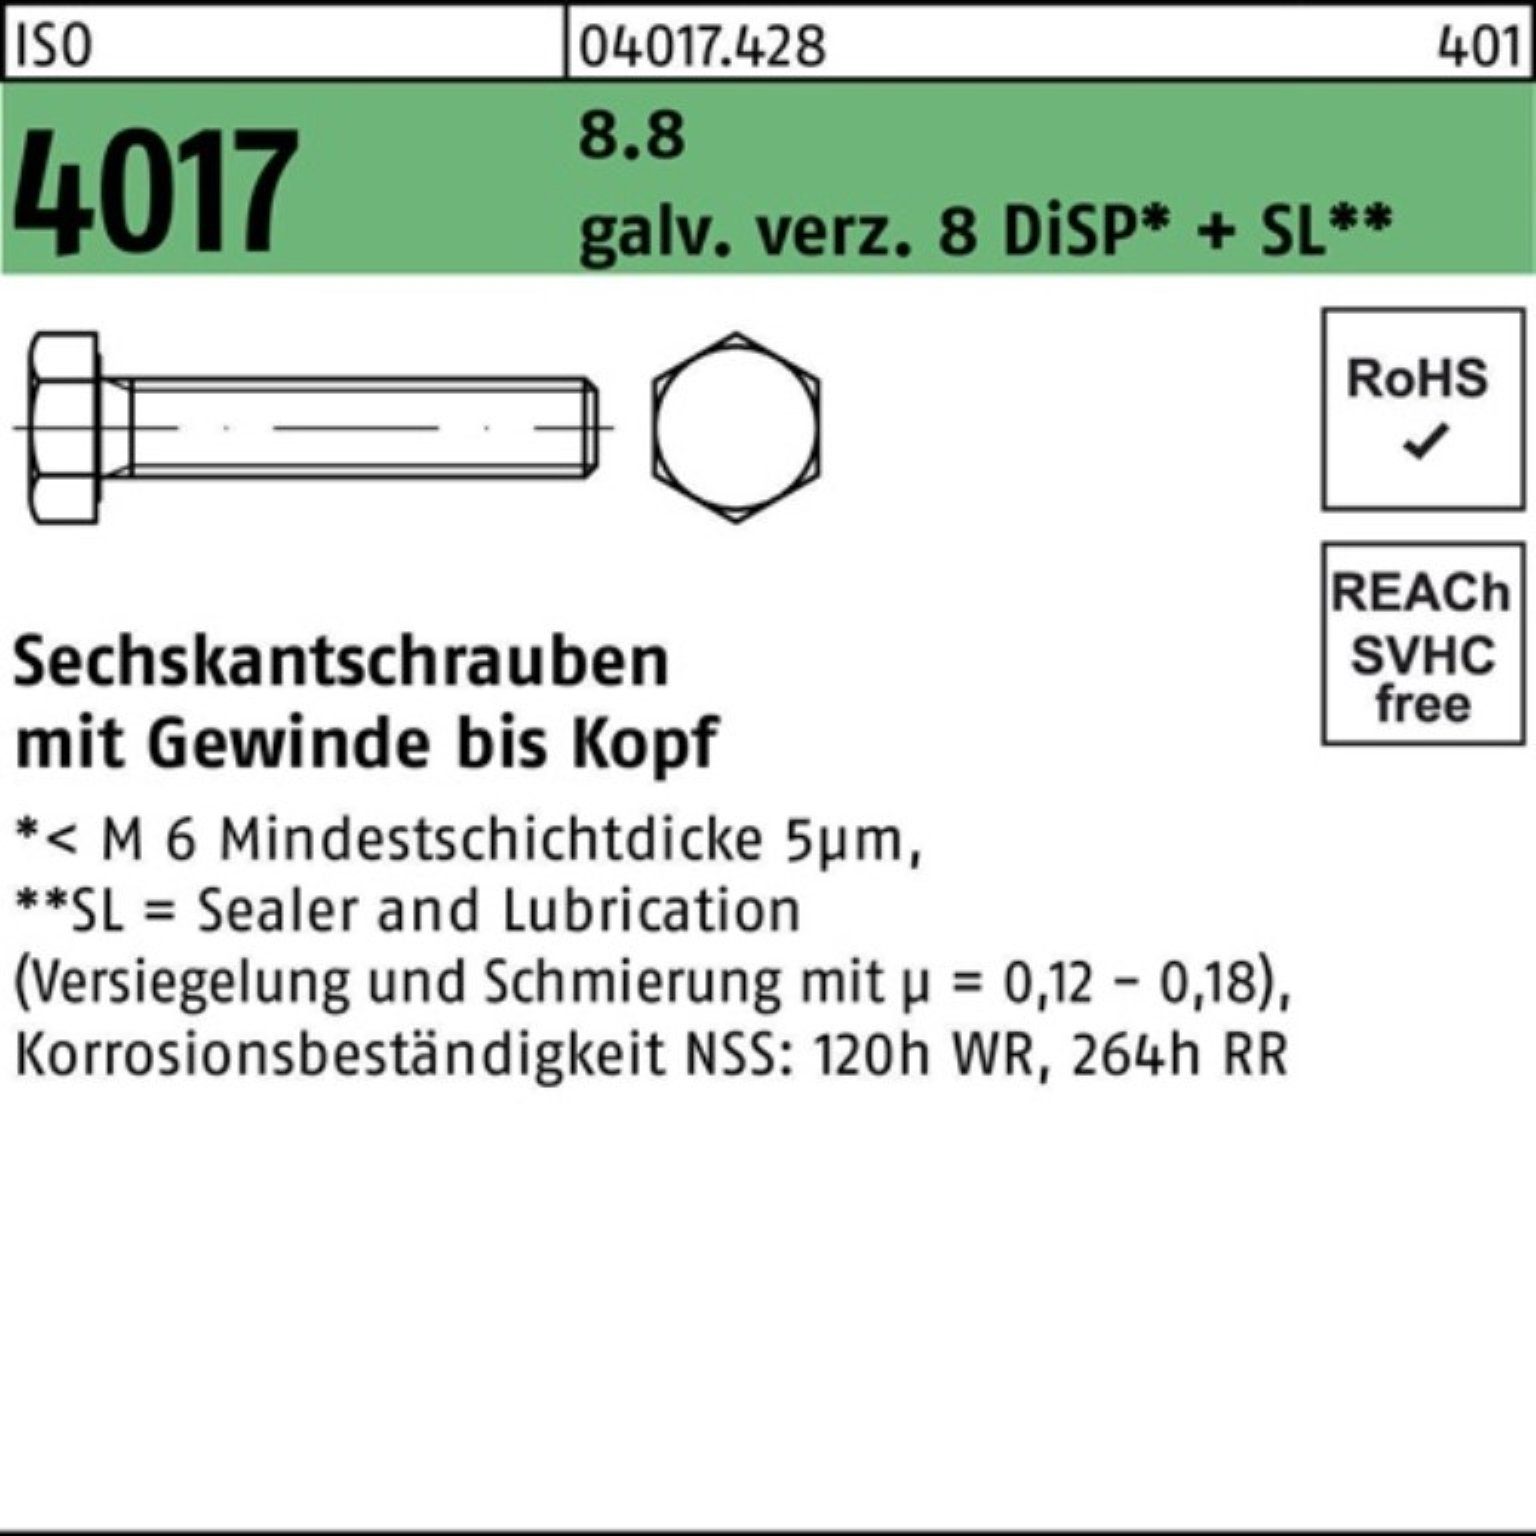 Bufab Sechskantschraube 100er Pack Sechskantschraube ISO 4017 VG M16x 60 8.8 galv.verz. 8 DiSP